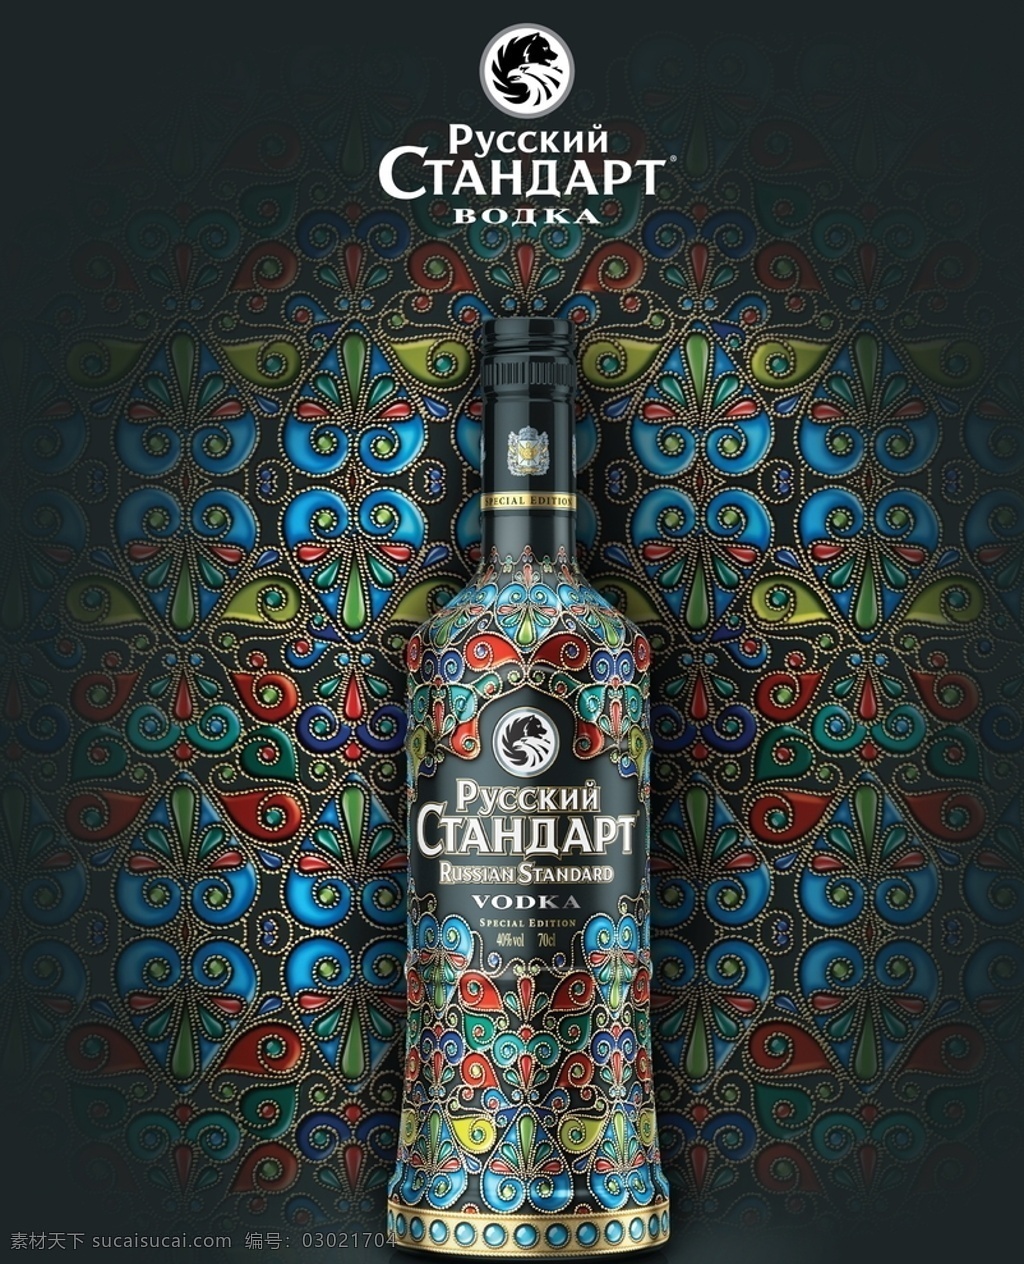 俄罗斯 标准 伏特加 俄罗斯伏特加 标准伏特加 vodka 俄罗斯酒 伏特加摄影图 餐饮美食 饮料酒水